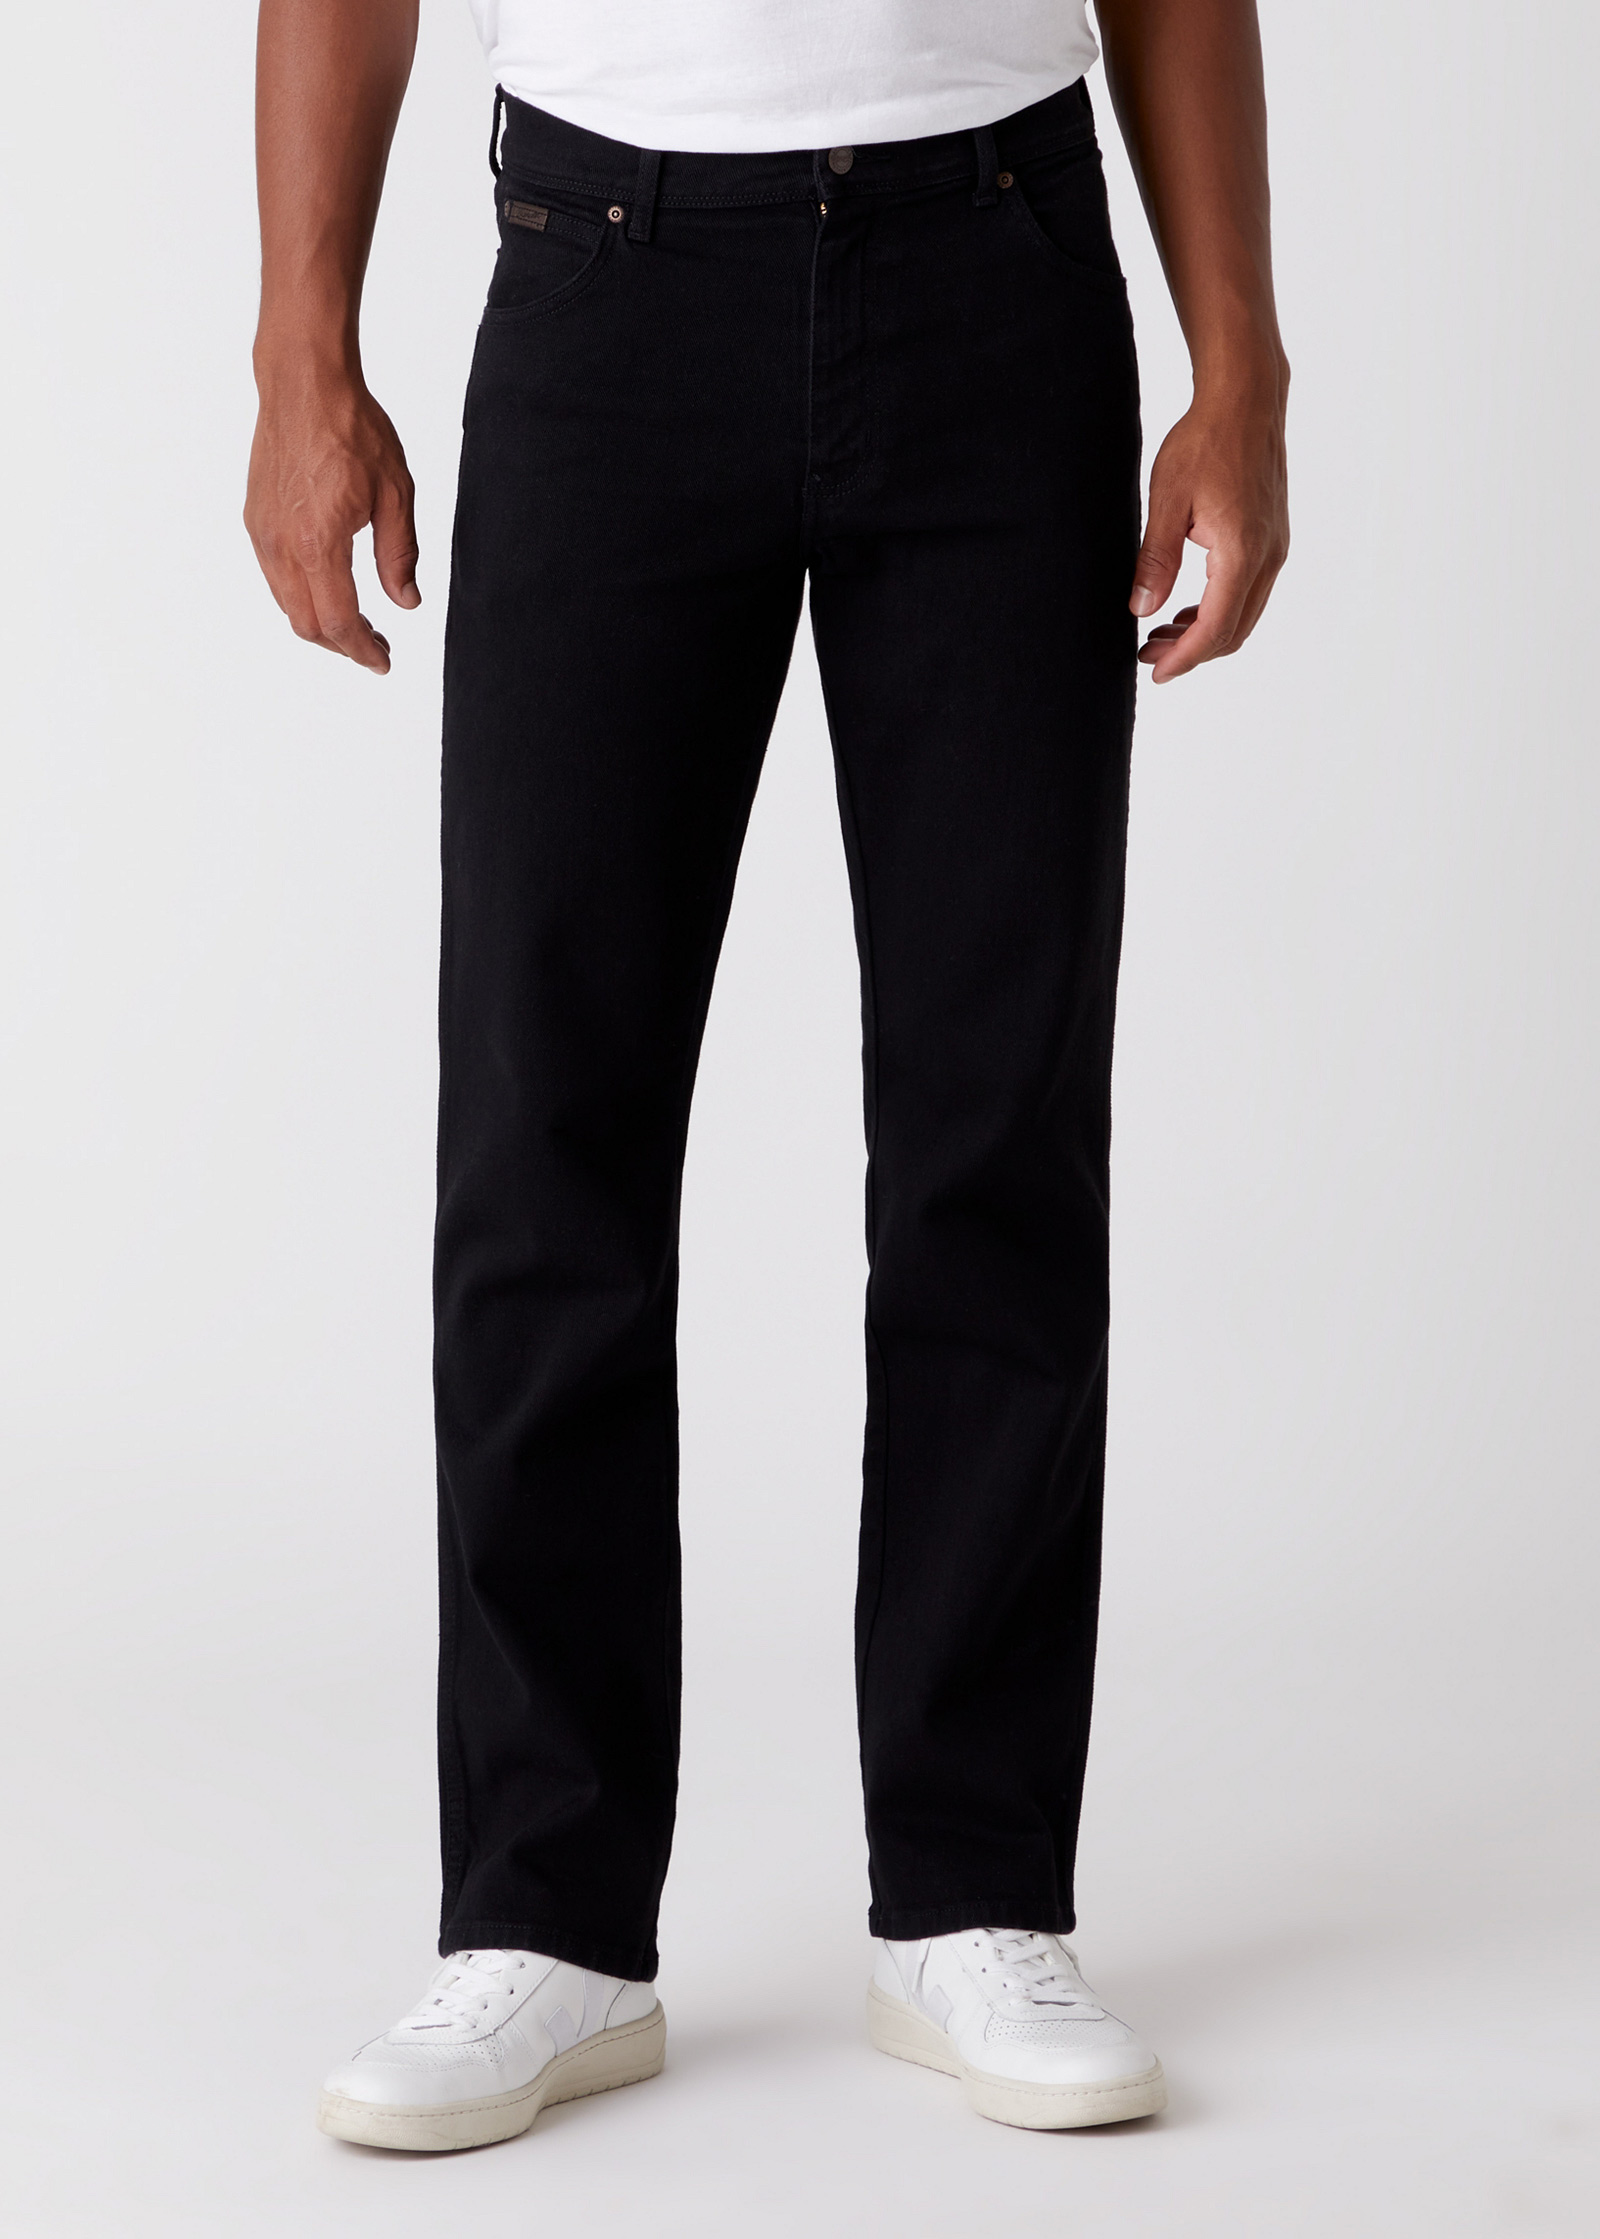 Wrangler Texas Stretch Regular Fit Denim Jeans New Men’s Black Overdye All Sizes